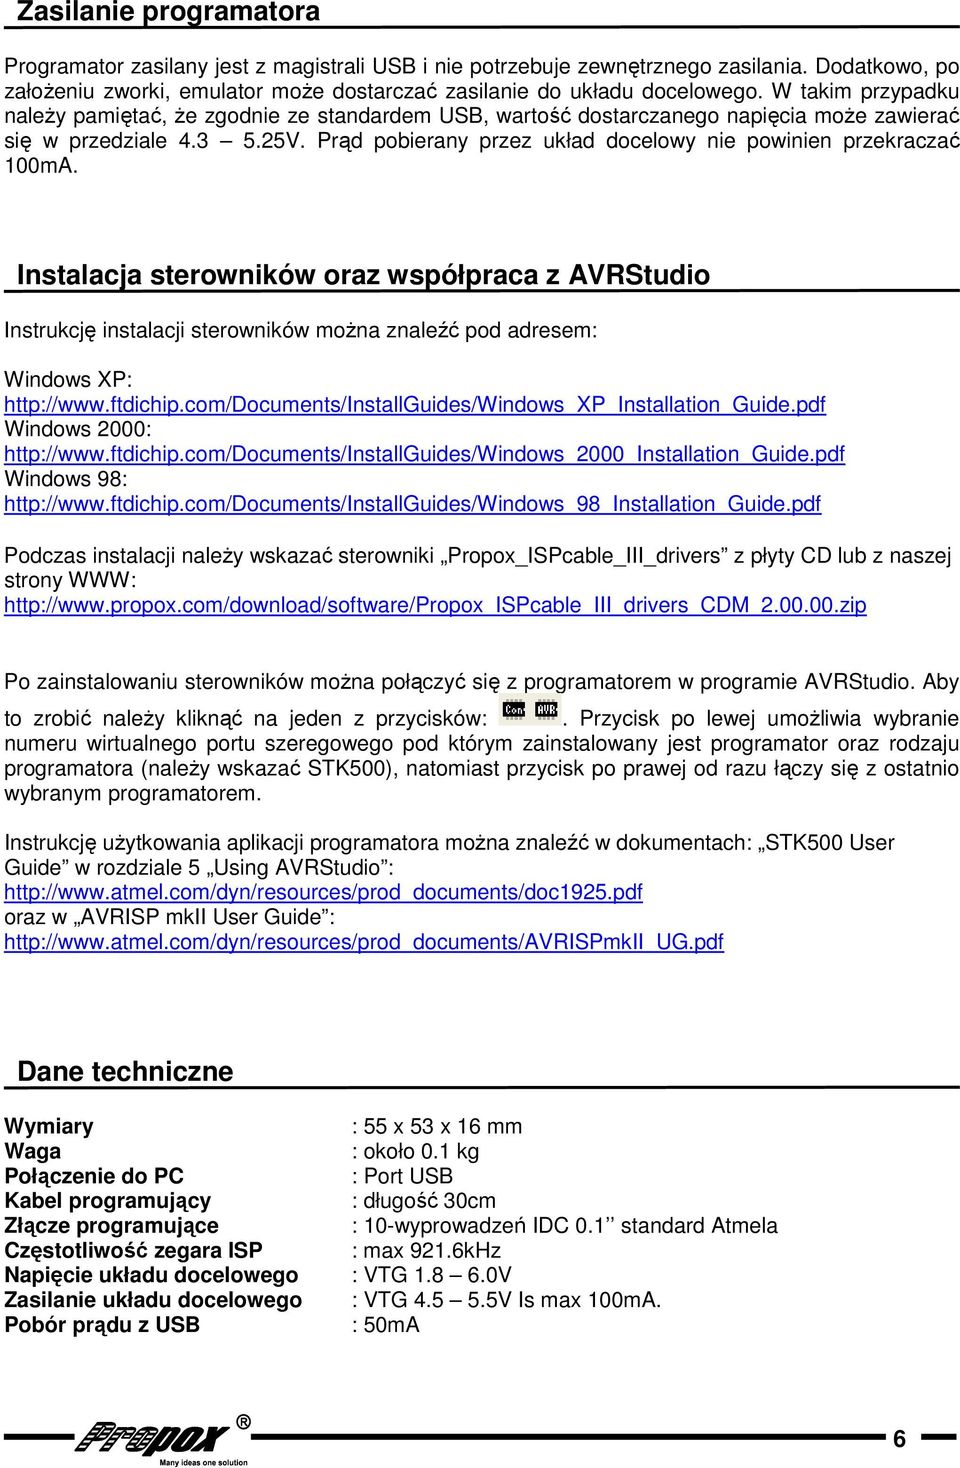 Instalacja sterowników oraz współpraca z AVRStudio Instrukcję instalacji sterowników można znaleźć pod adresem: Windows XP: http://www.ftdichip.